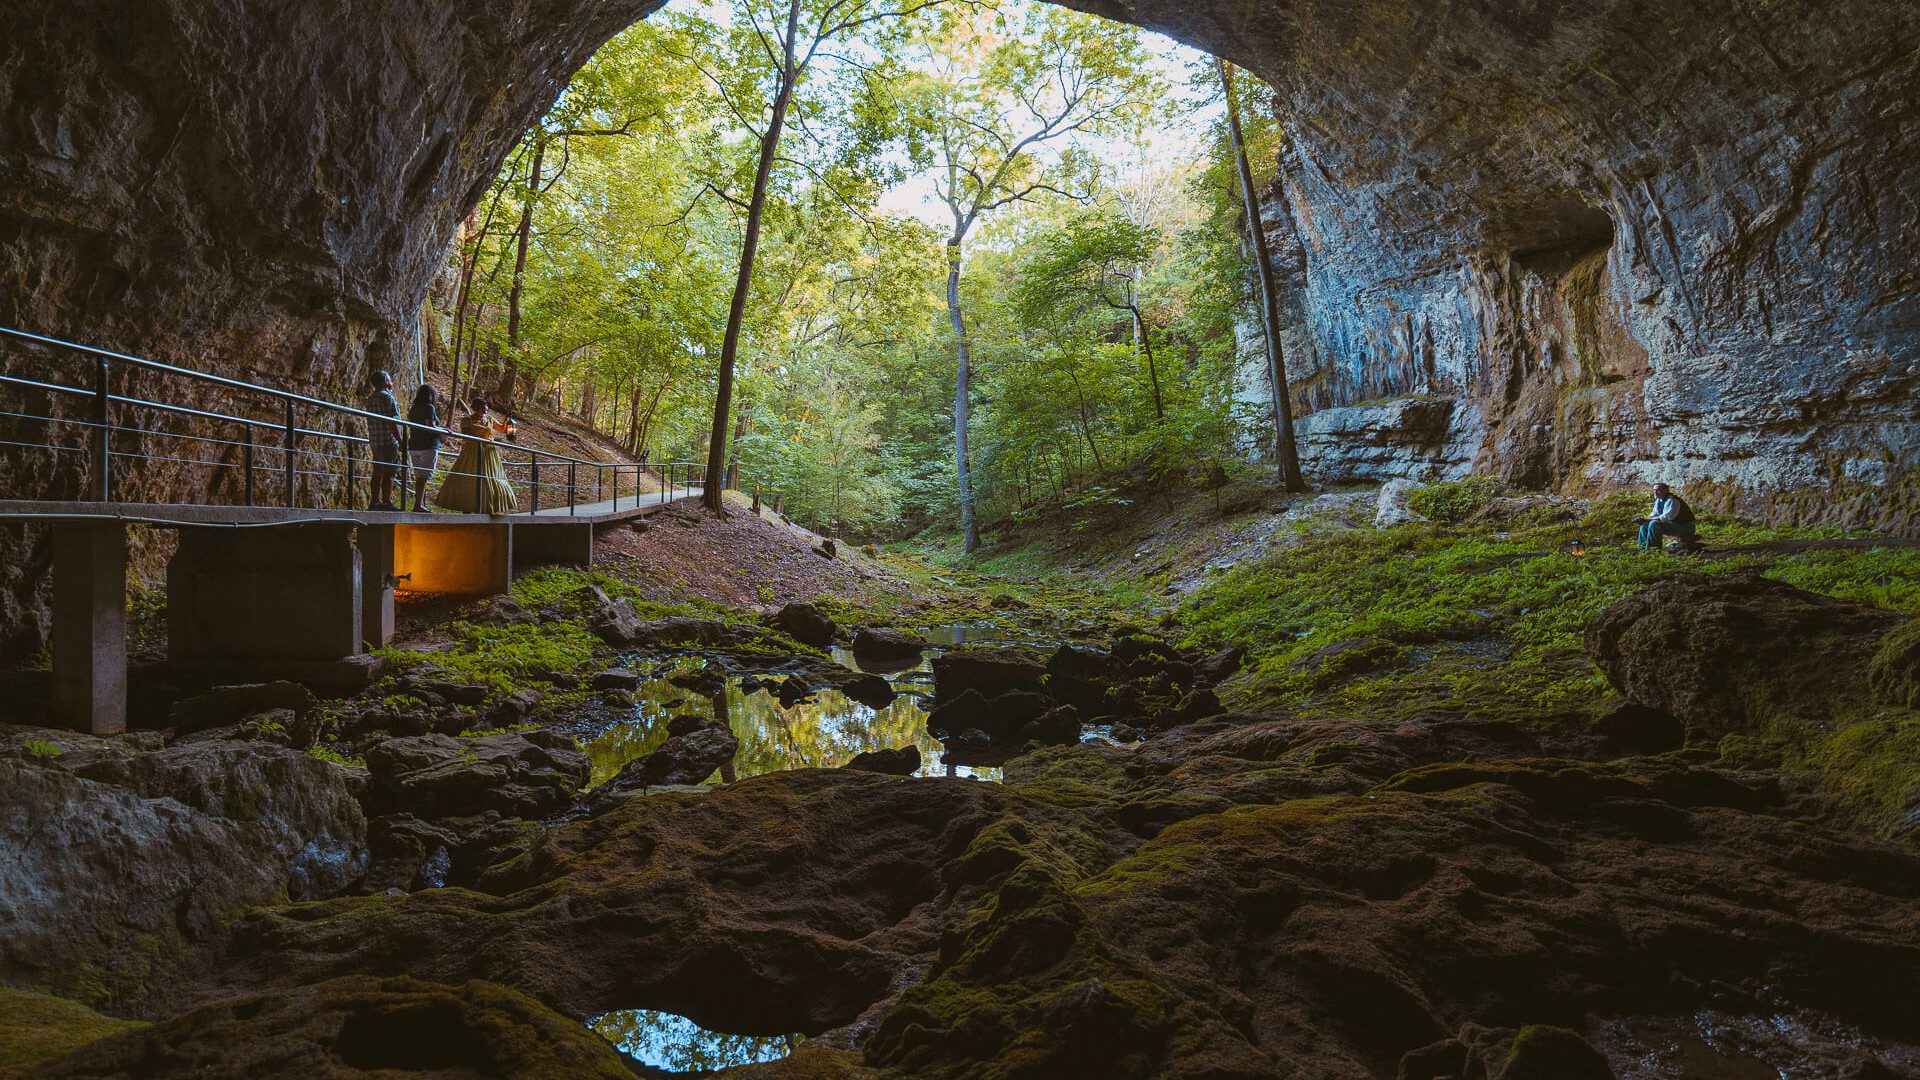 Smallin Civil War Cave is a historic site in Missouri